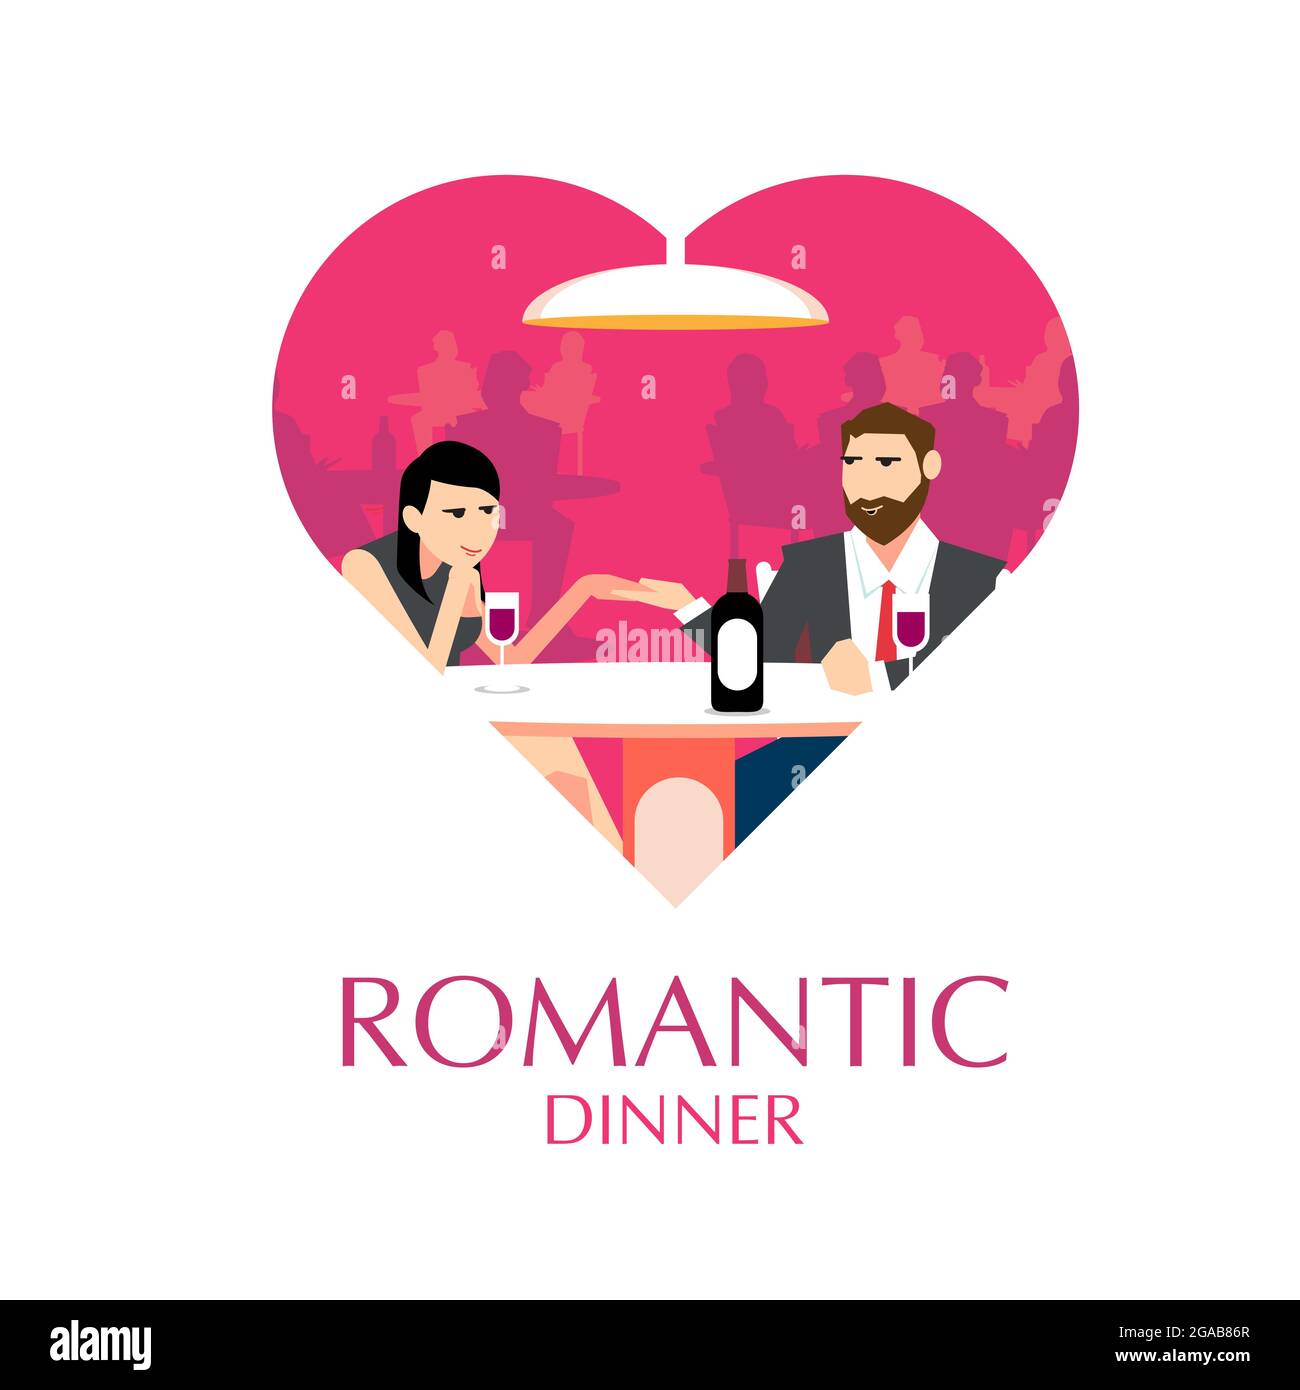 Romantic Dinner flat illustration in heart shape Stock Vector